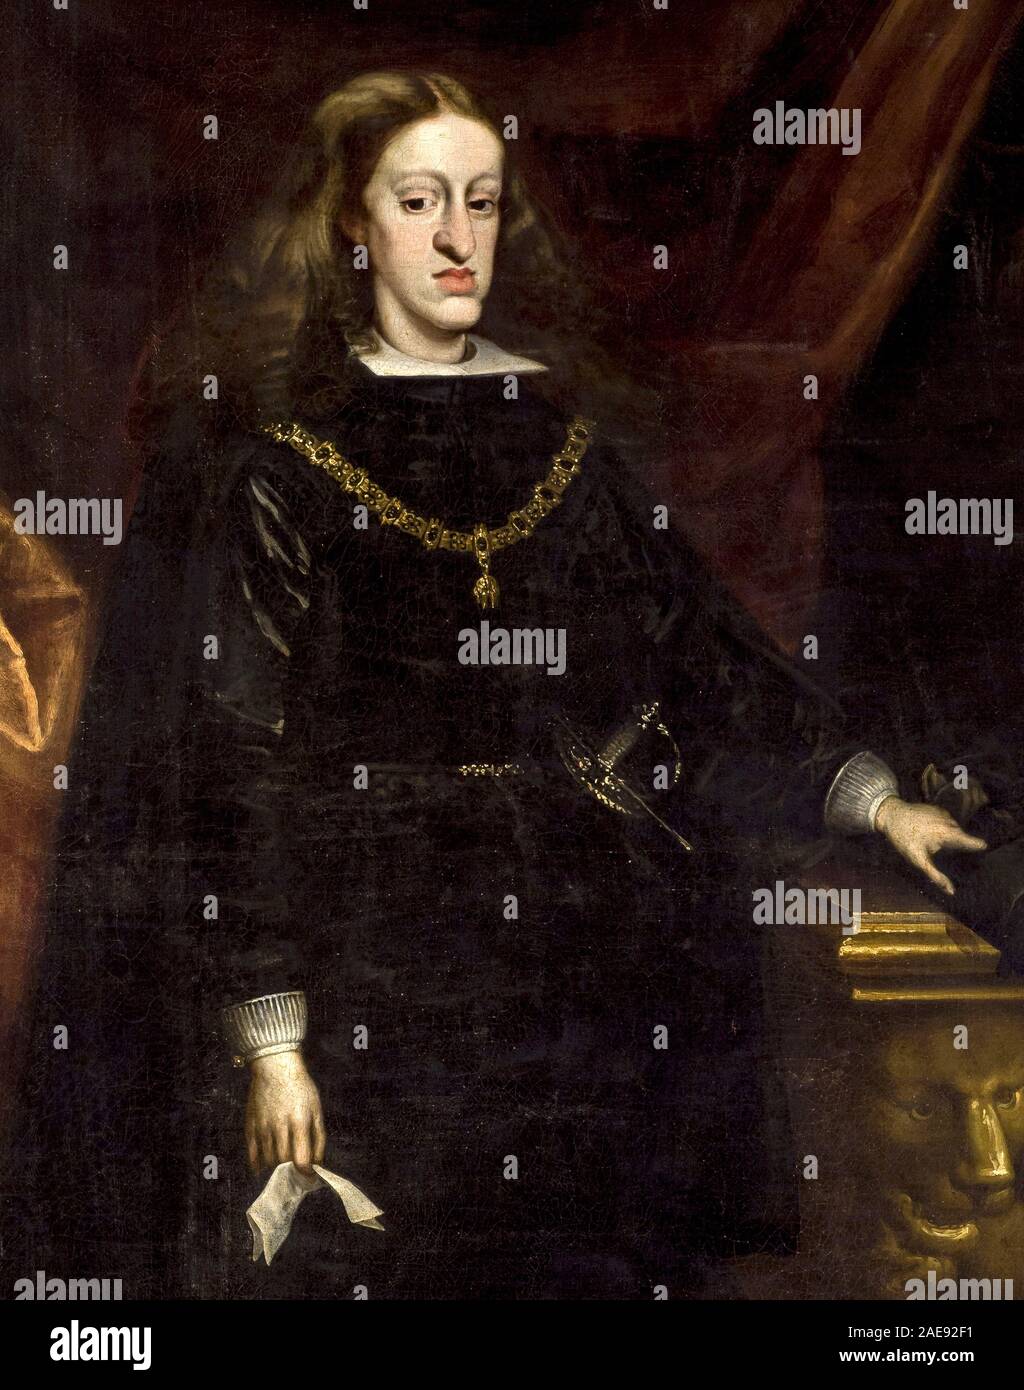 Karl II. von Spanien. Charles II (1661-1700), König von Spanien, auch bekannt als El Hechizado oder der Verhexte, war der letzte Habsburger Herrscher des Spanischen Reiches. Jetzt ist er am besten für seine körperliche Behinderungen erinnerte, und der Krieg um seinen Thron, dass sein Tod folgte. Portrait von Juan Carreño de Miranda, C. 1685 Stockfoto